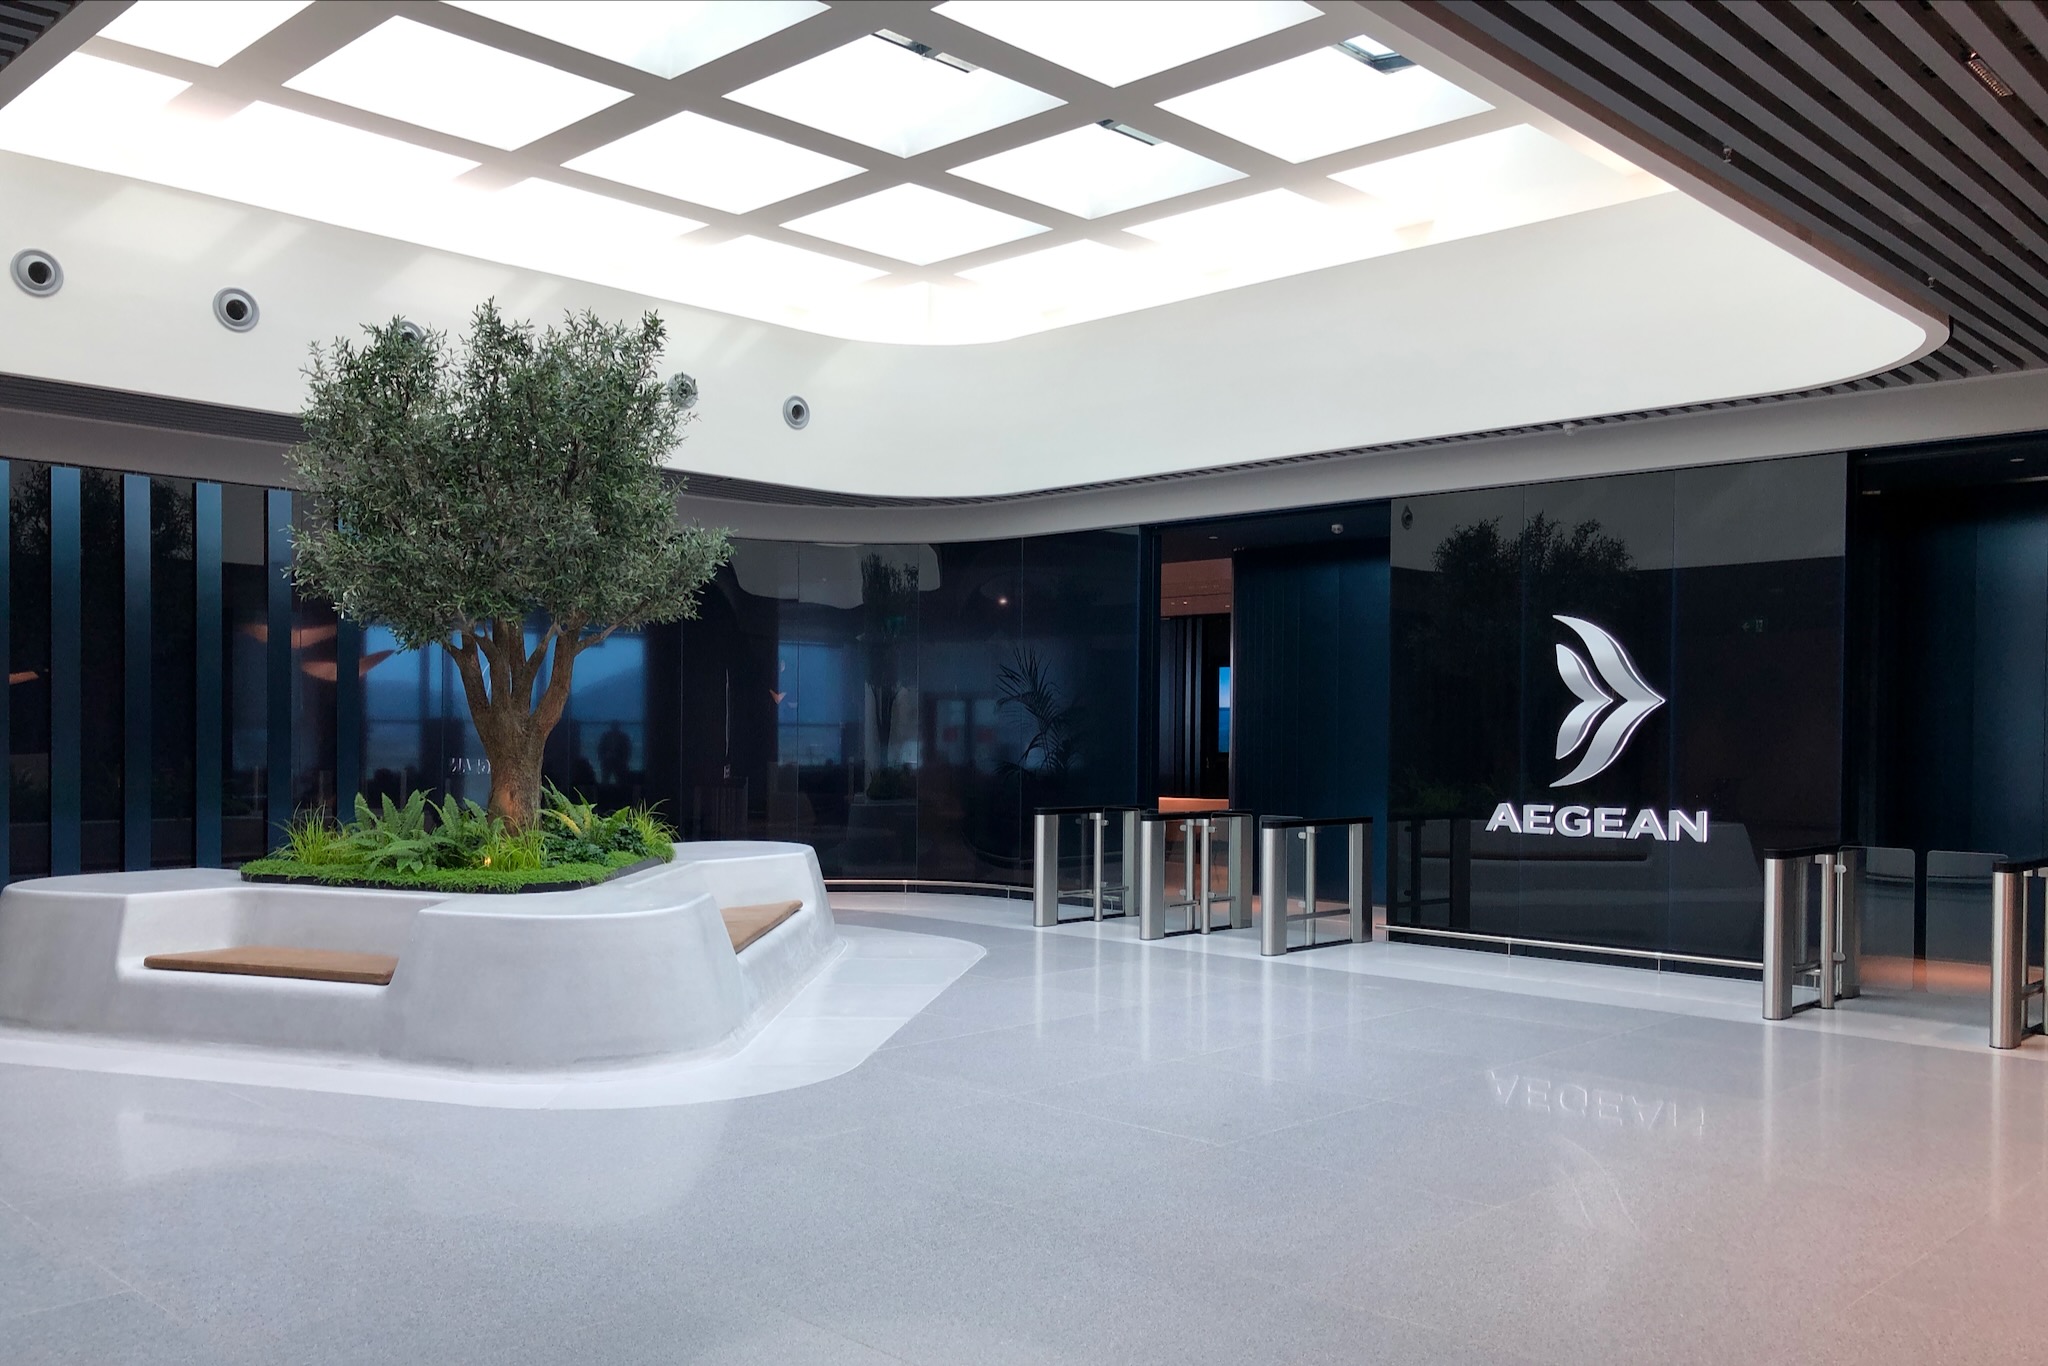 Eingangsbereich der Aegean Business Lounge im Nicht-Schengen-Bereich (Terminal A)